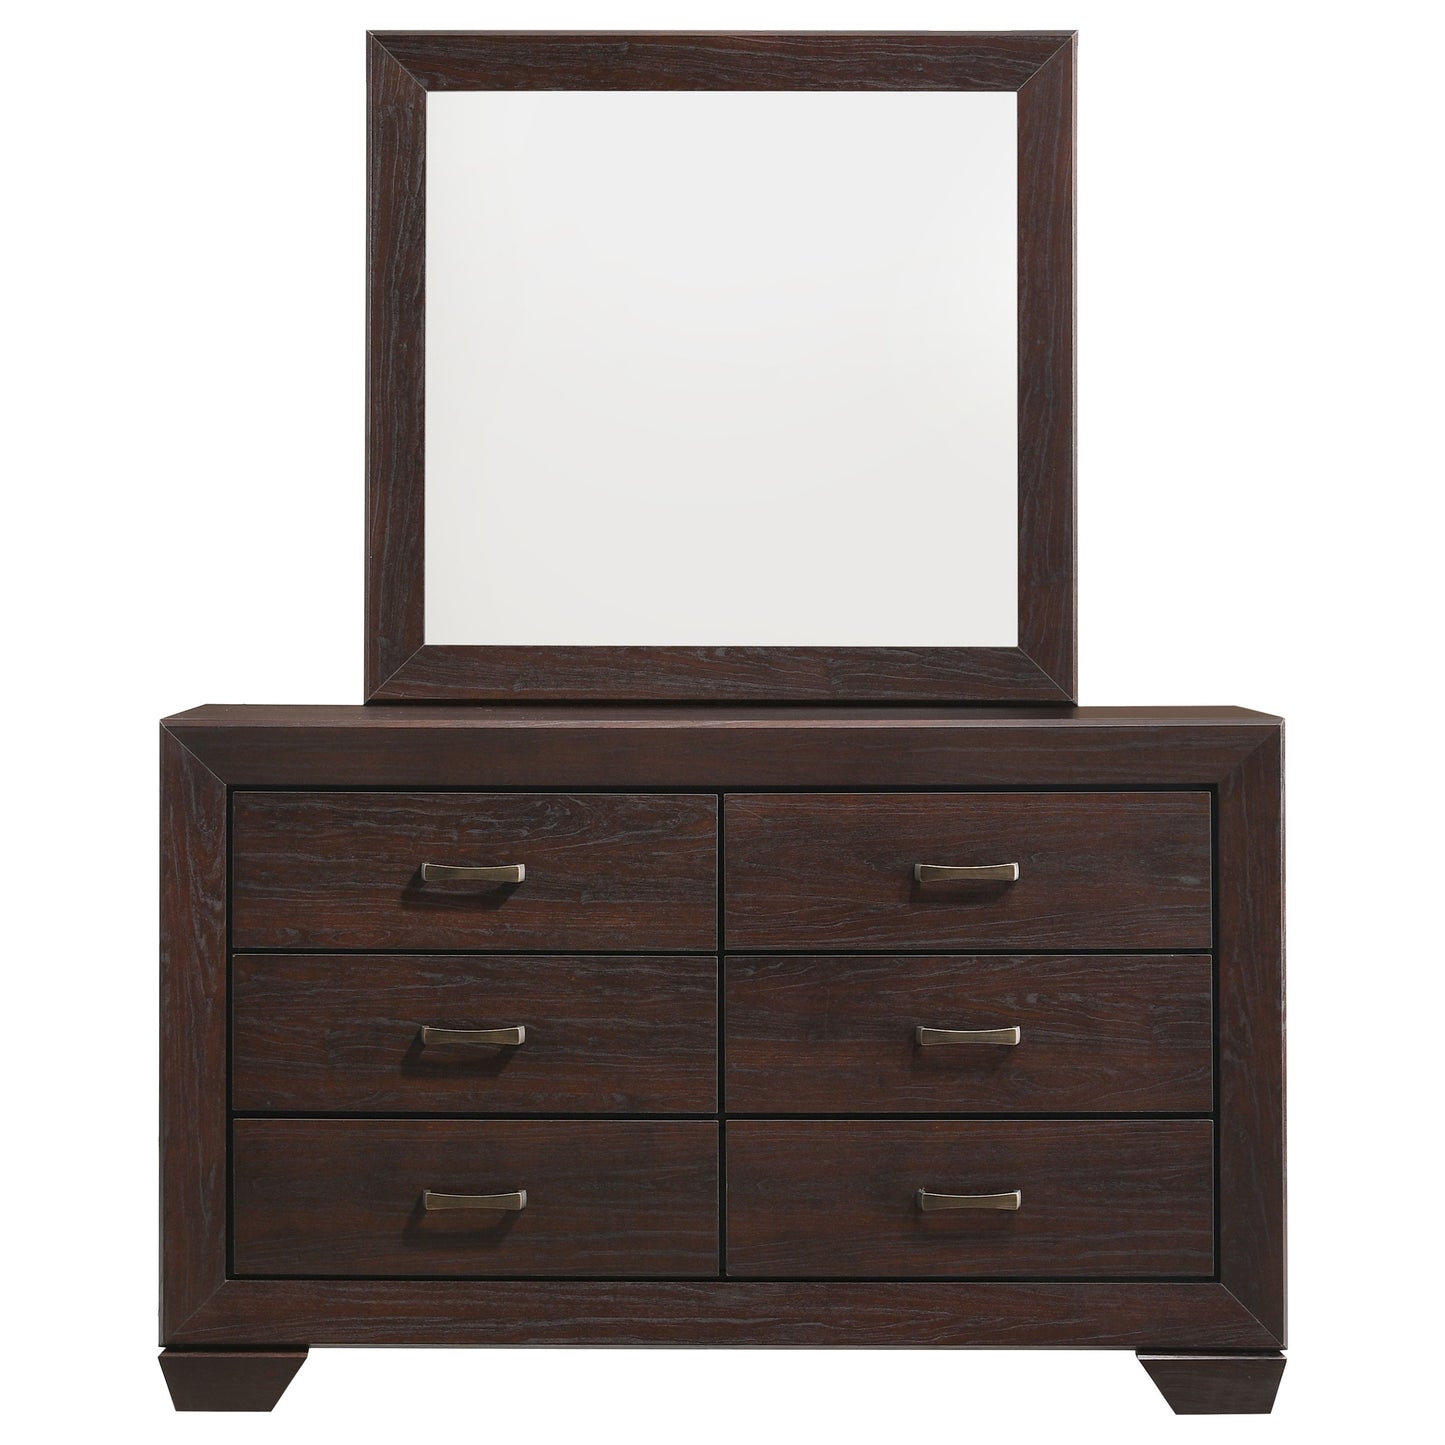 Kauffman 6-drawer Dresser with Mirror Dark Cocoa